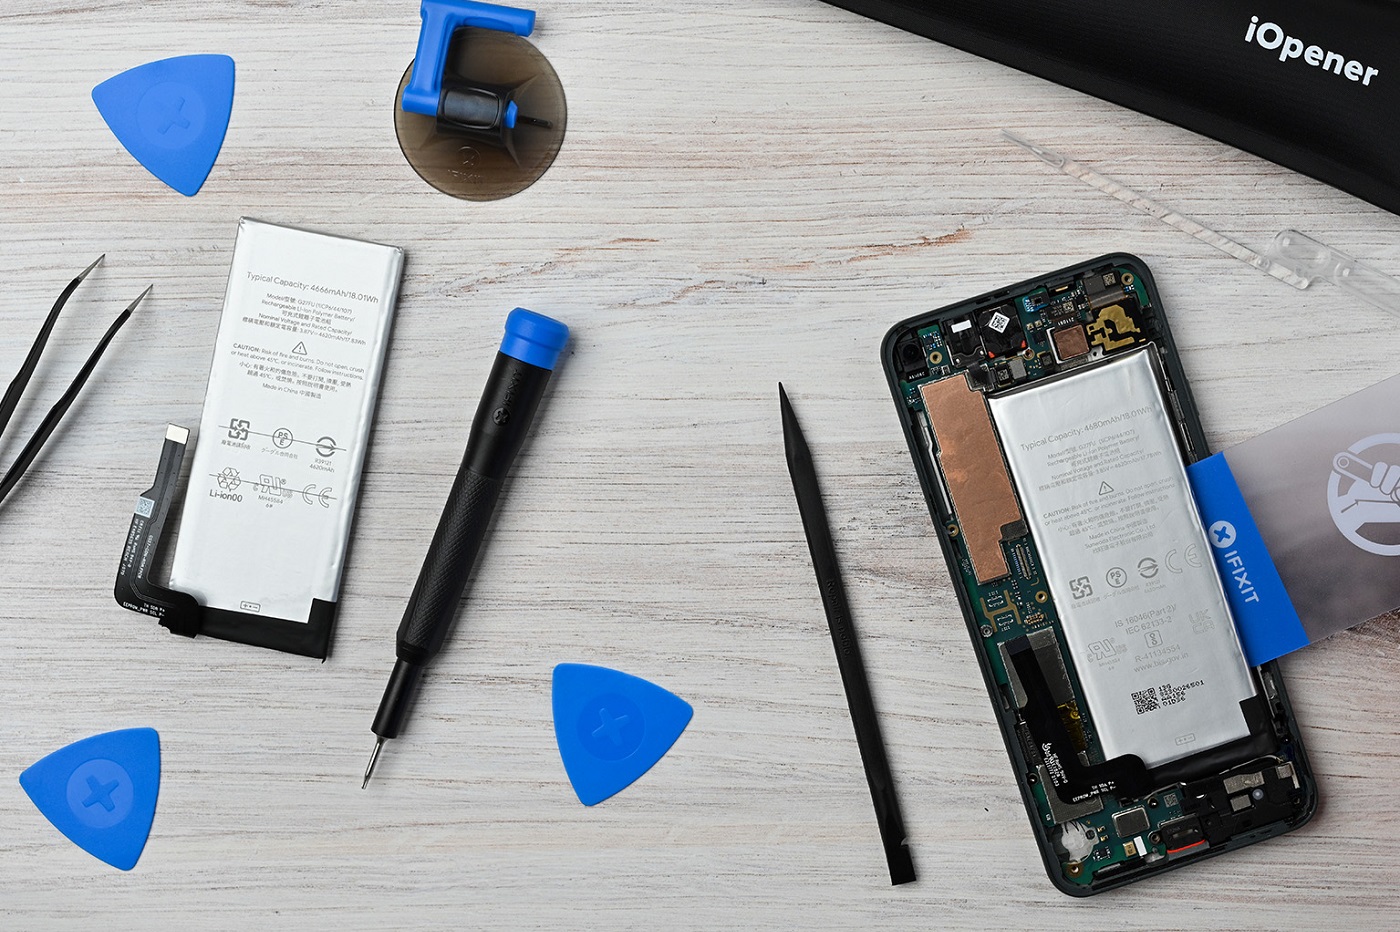 iFixit propose des pièces détachées d'origine pour réparer votre smartphone Pixel